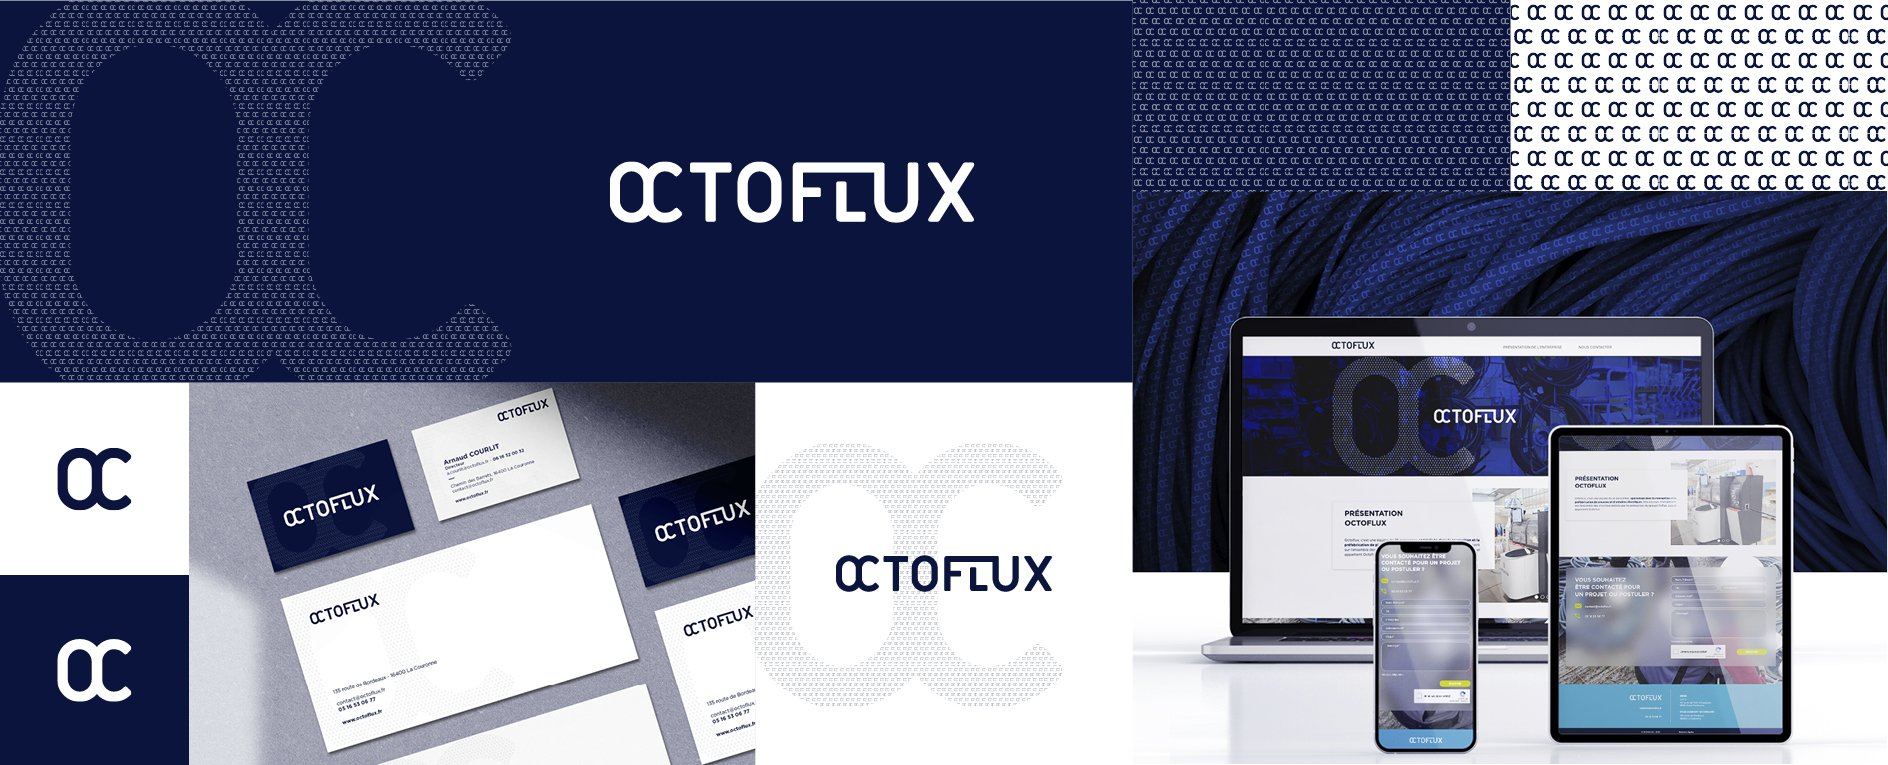 OCTOFLUX - logo, identité graphique, mise en situation